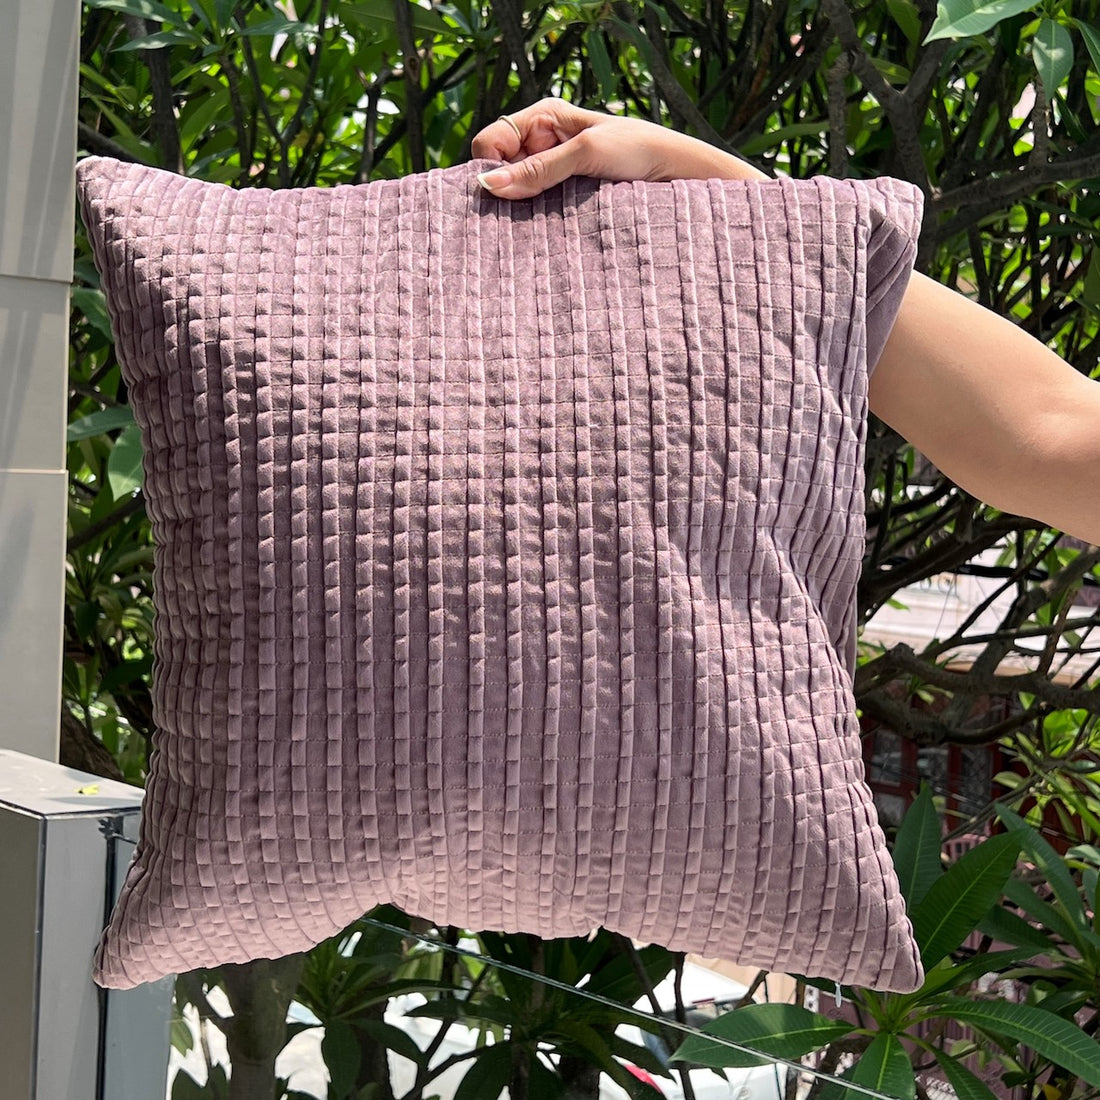 Bello Lilac Velvet Cushion Cover